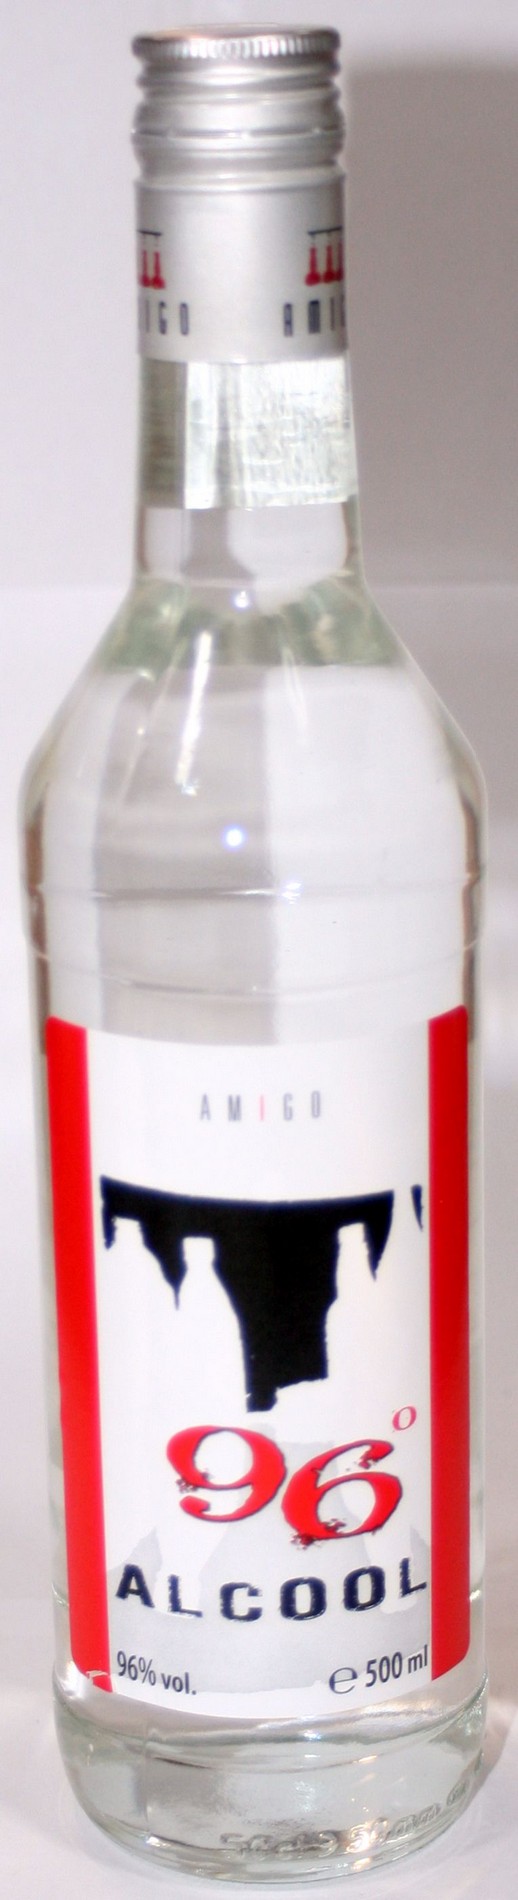 AMIGO ALCOOL 96% 500ML # 9 buc